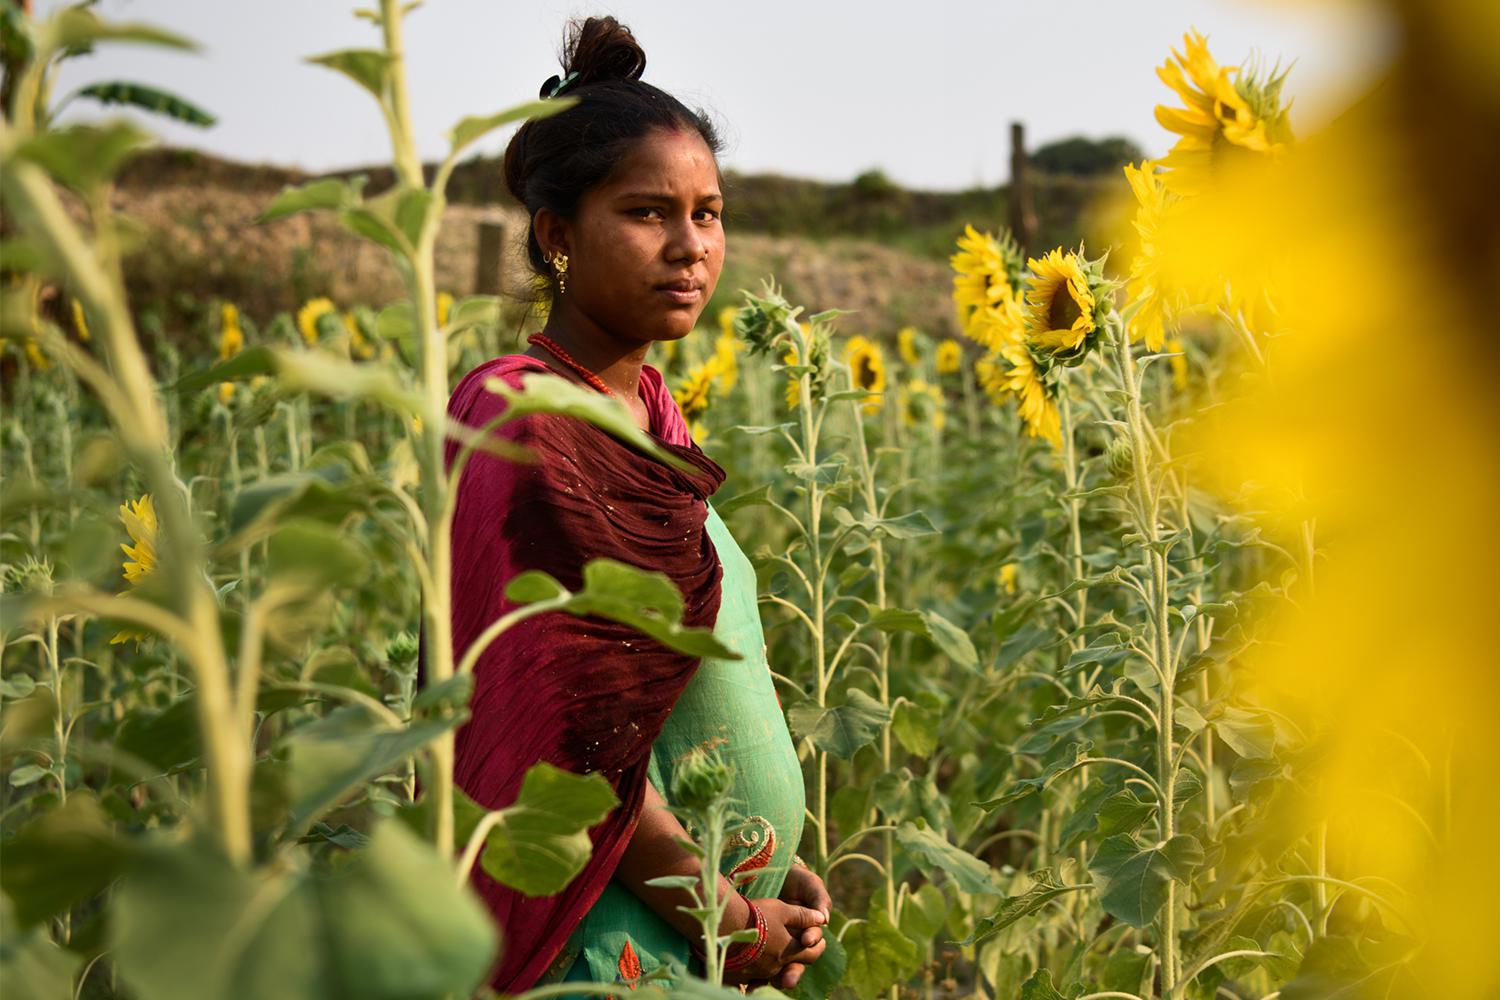 Junior Forbidden Sex - Child Marriage in Nepal | HRW